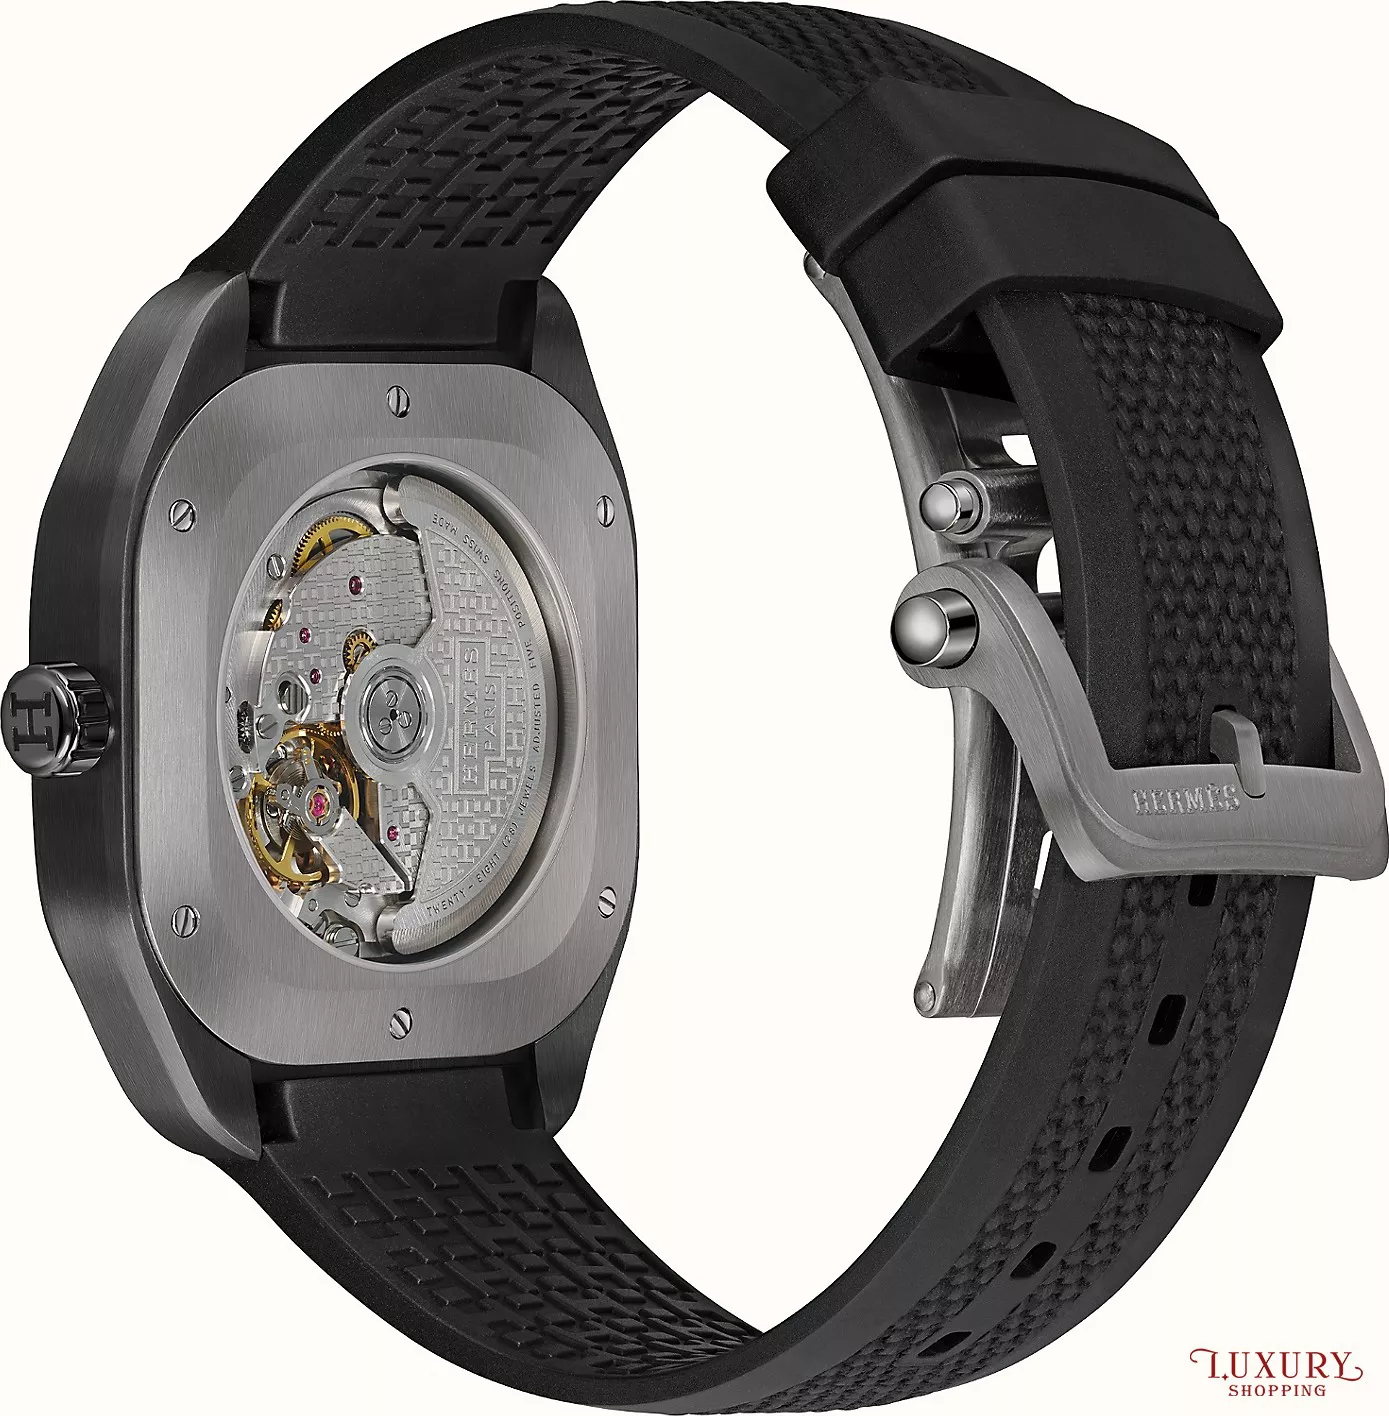 Hermes H08 W049428WW00 Watch 39 x 39mm